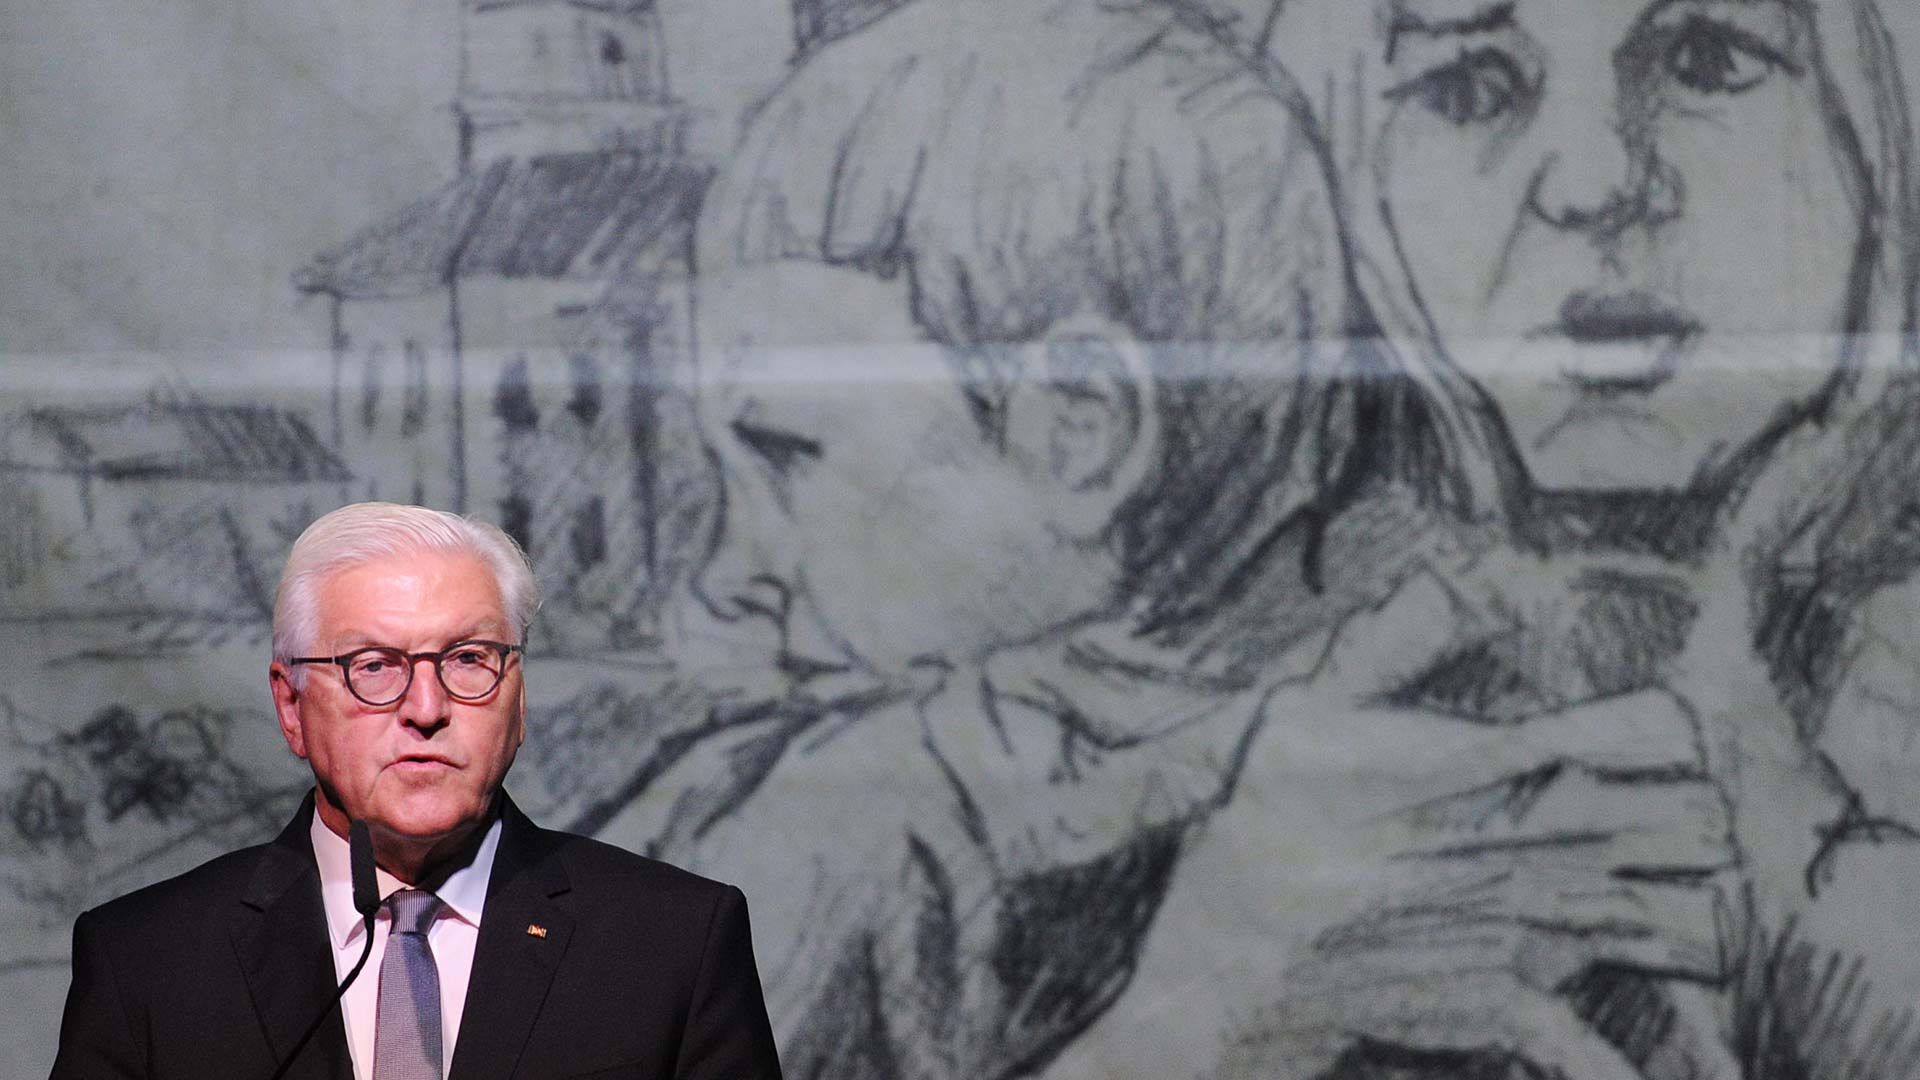 El presidente alemán pide perdón a Polonia 80 años después de la II Guerra Mundial